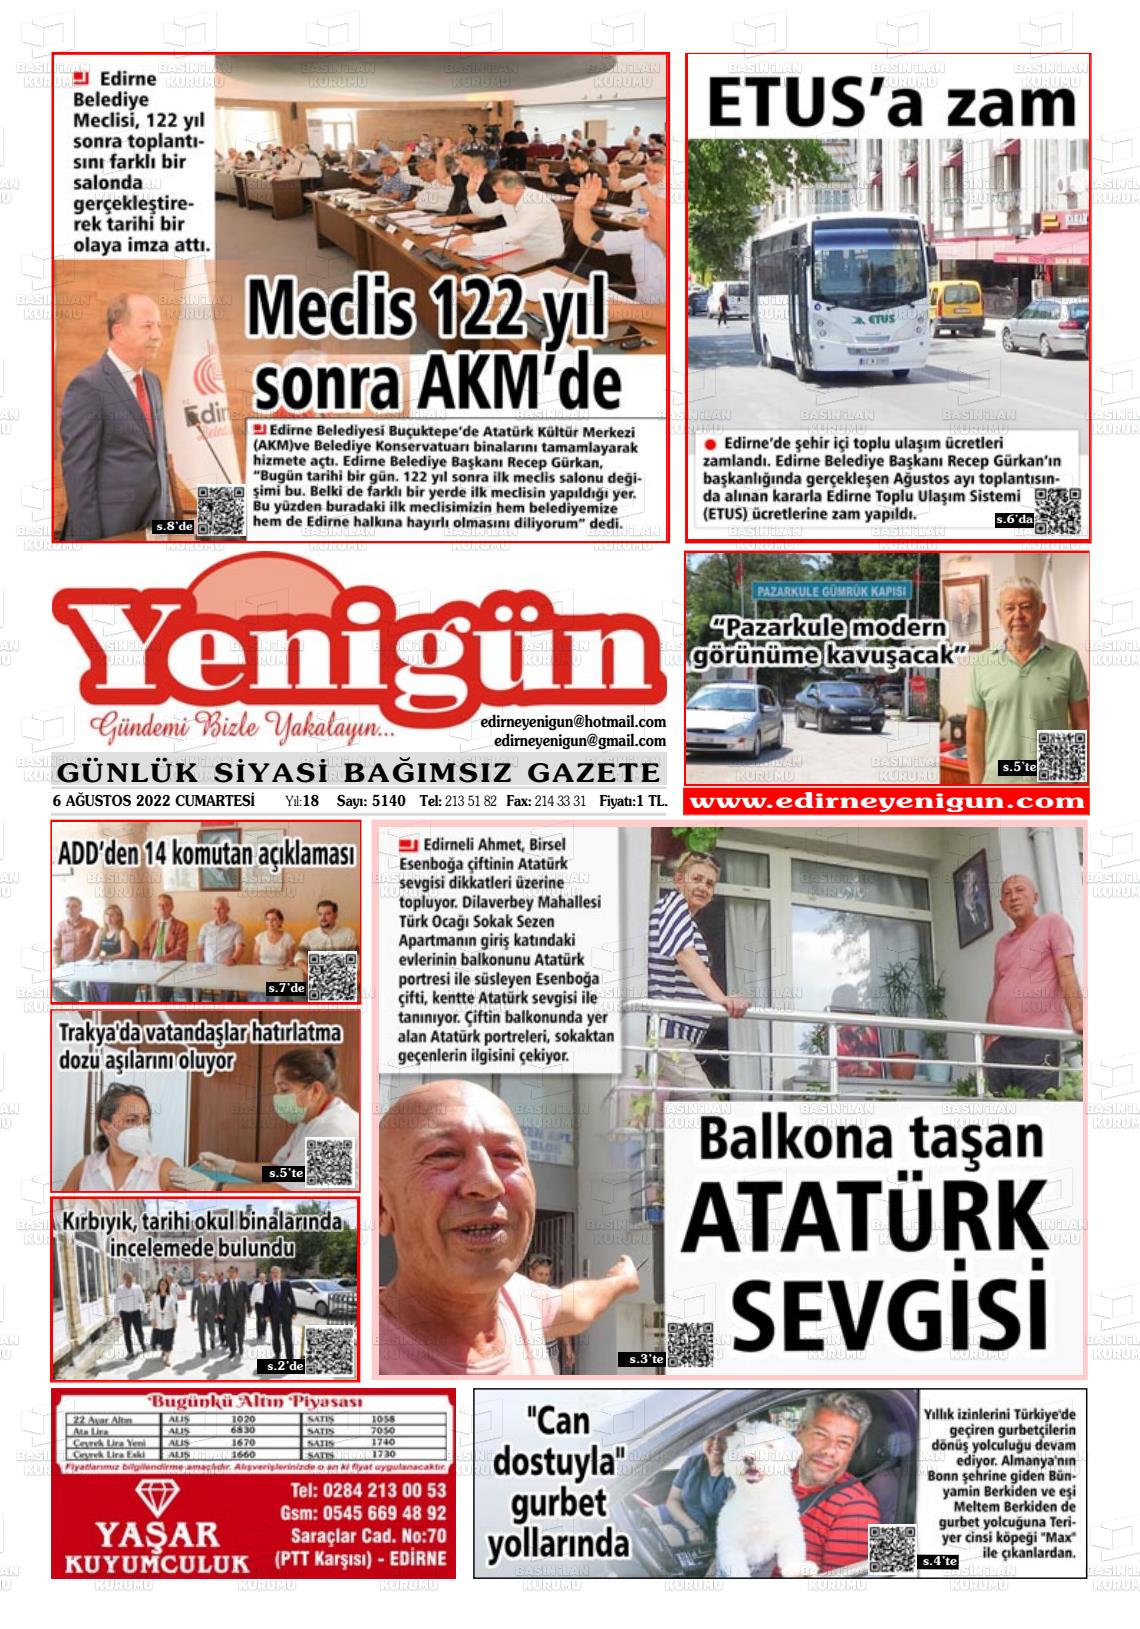 06 Ağustos 2022 Edirne Yenigün Gazete Manşeti